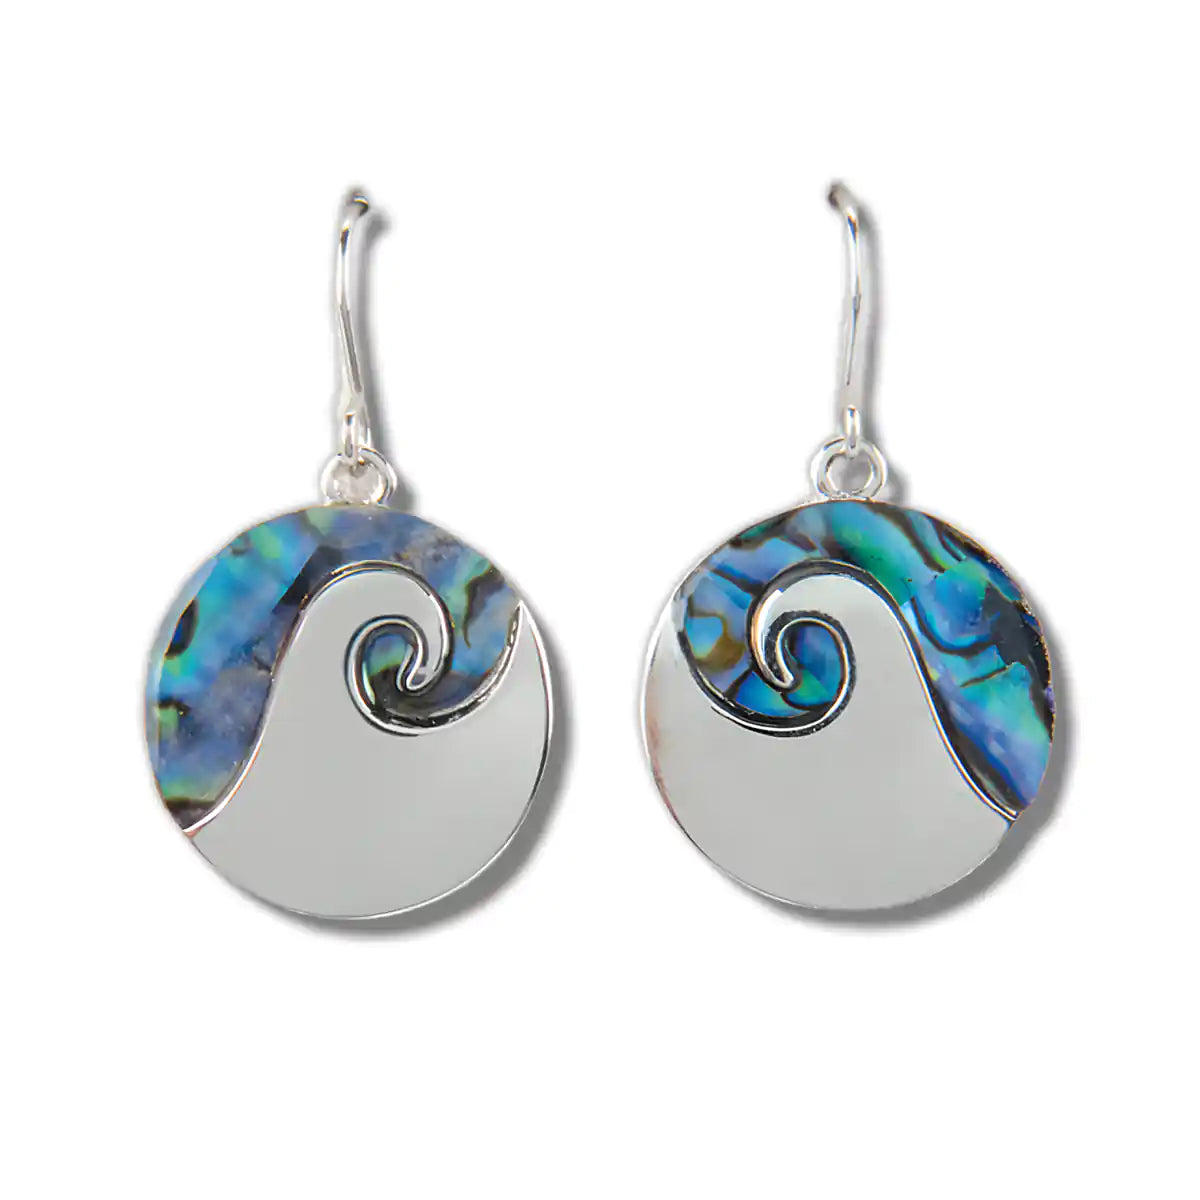 Glacier pearle ocean swirl earrings